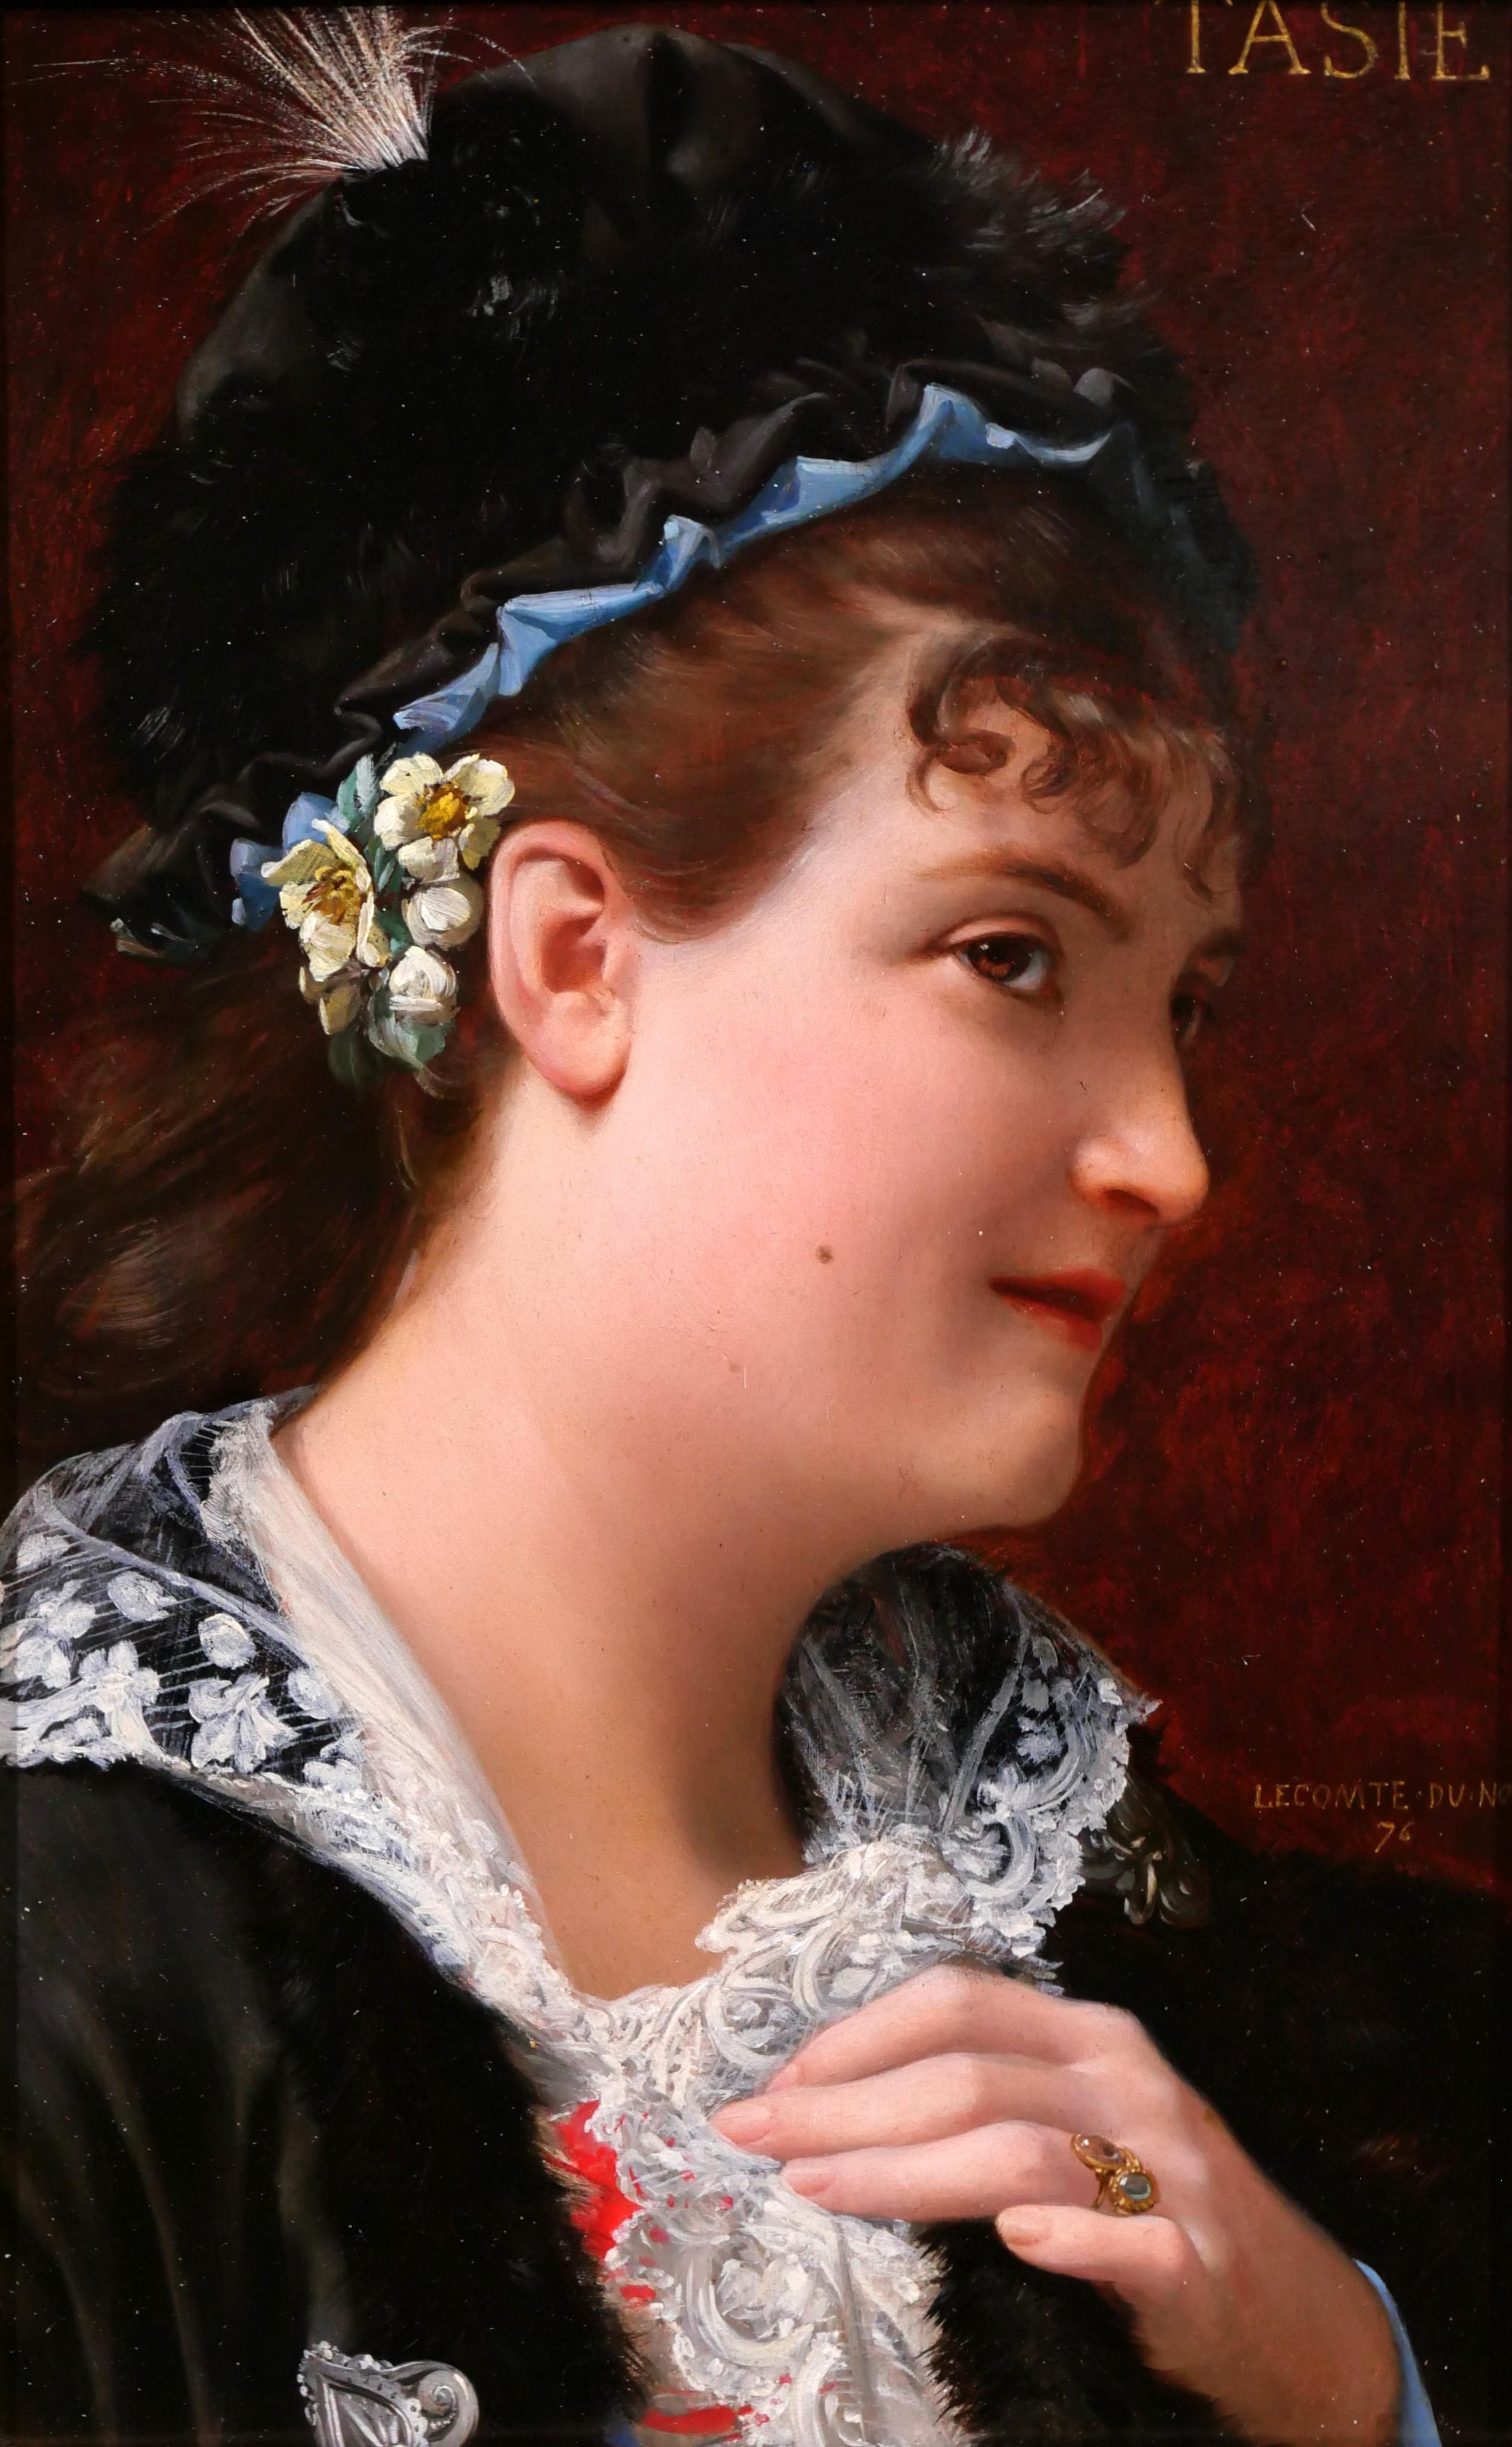 Portrait Painting Jean Jules Antoine LECOMTE DU NOÜY - Portrait de femme, Tasie